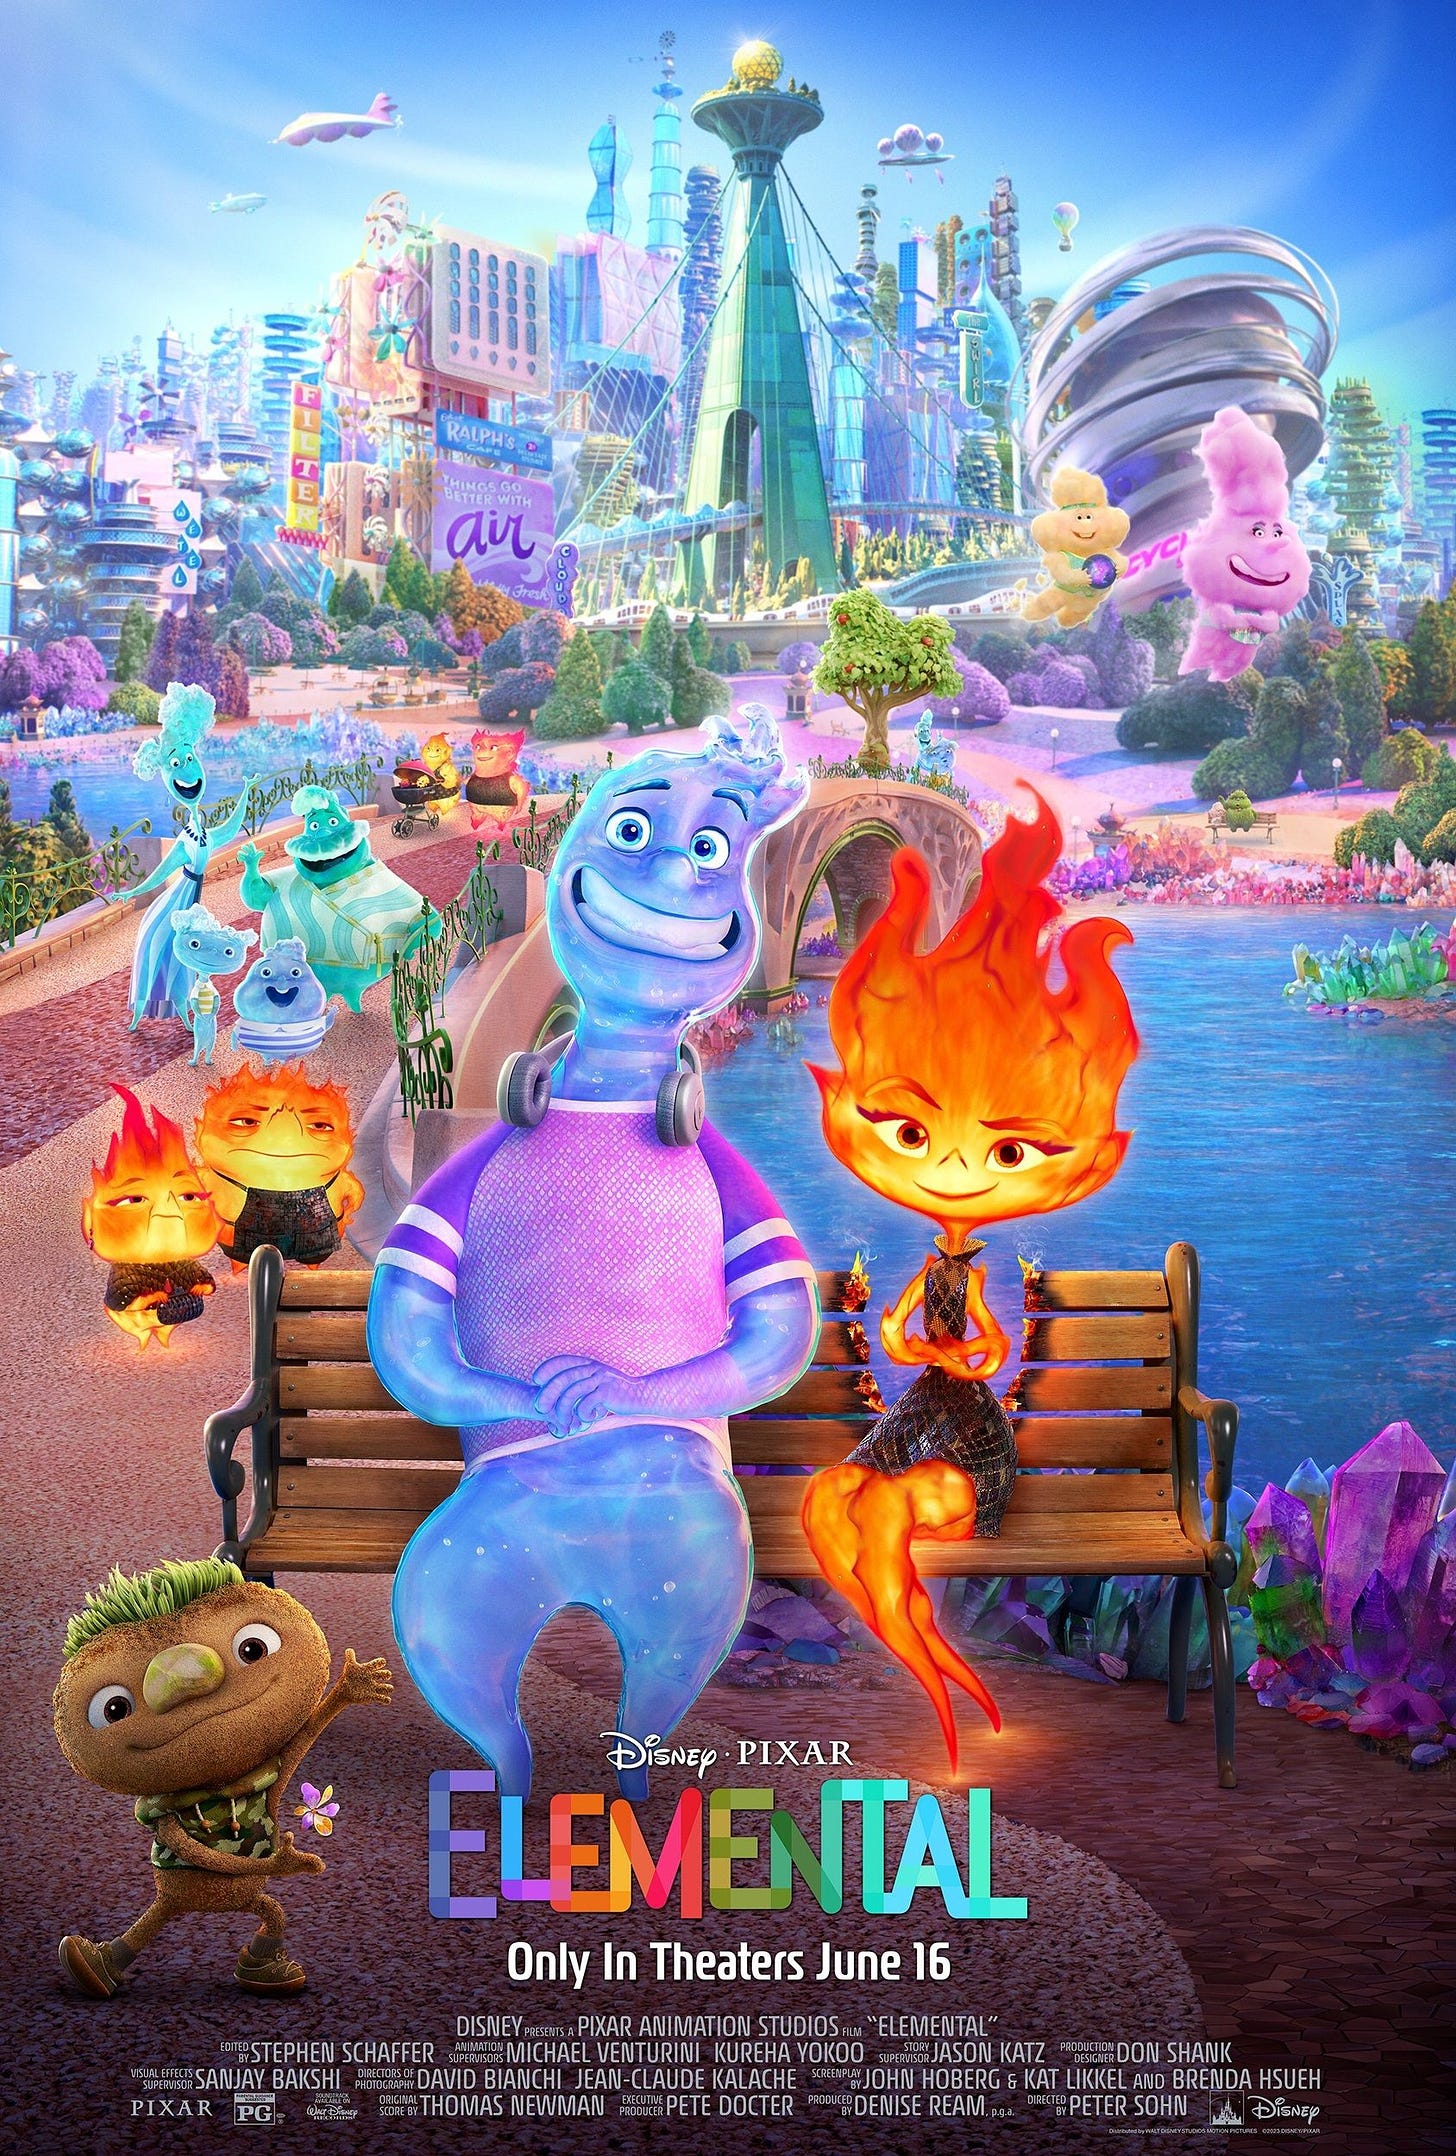 Elemental Movie Posters - Pixar Post